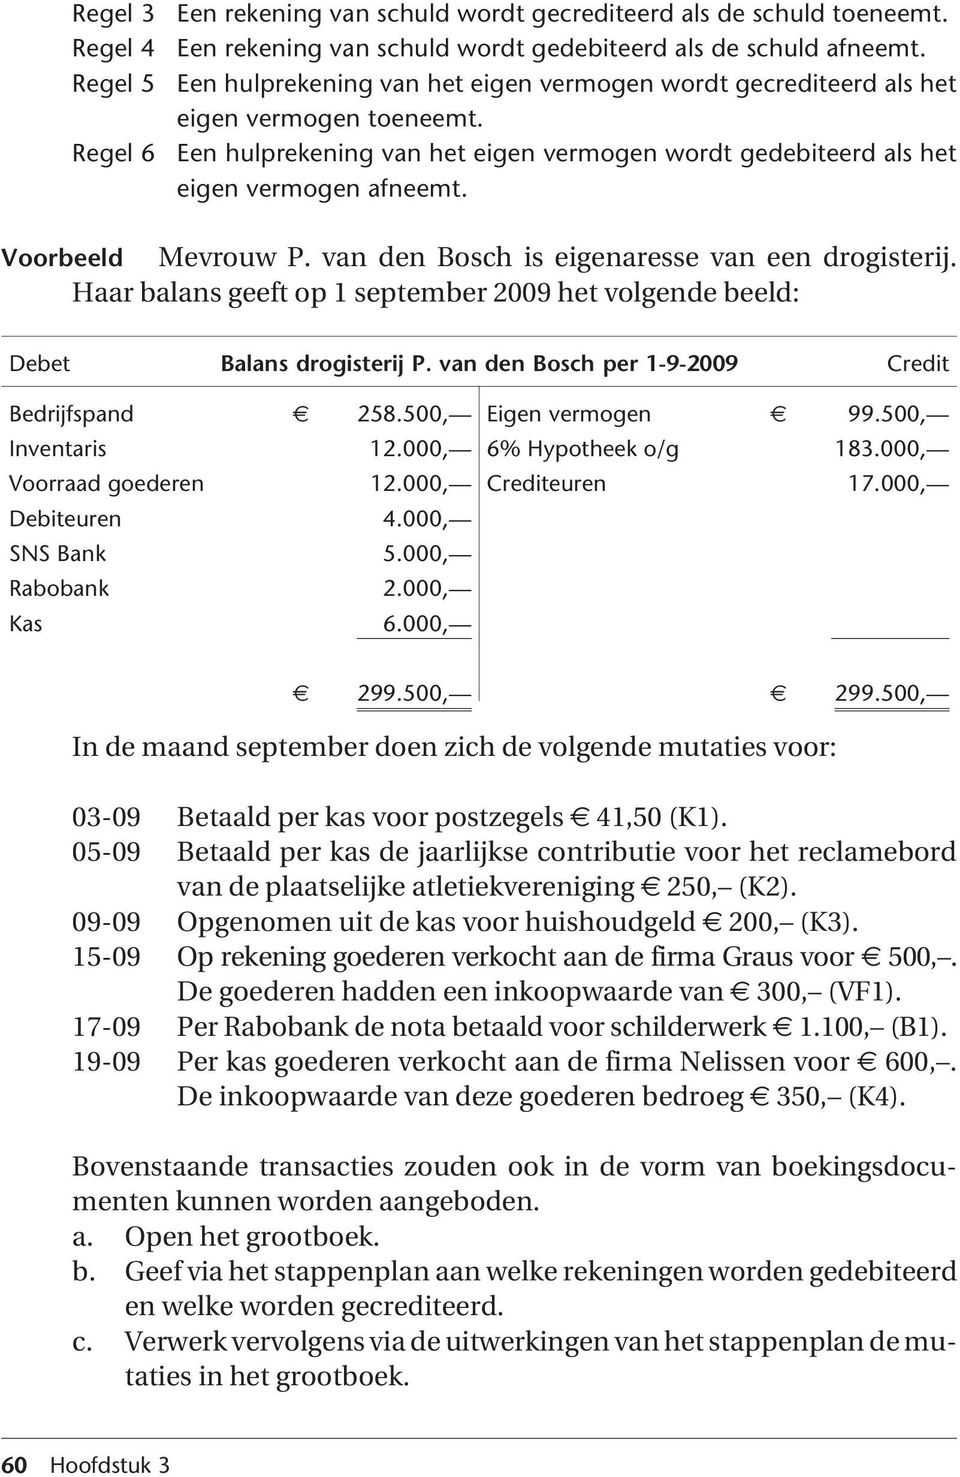 Voorbeeld Mevrouw P. van den osch is eigenaresse van een drogisterij. Haar balans geeft op 1 september 2009 het volgende beeld: Debet alans drogisterij P.